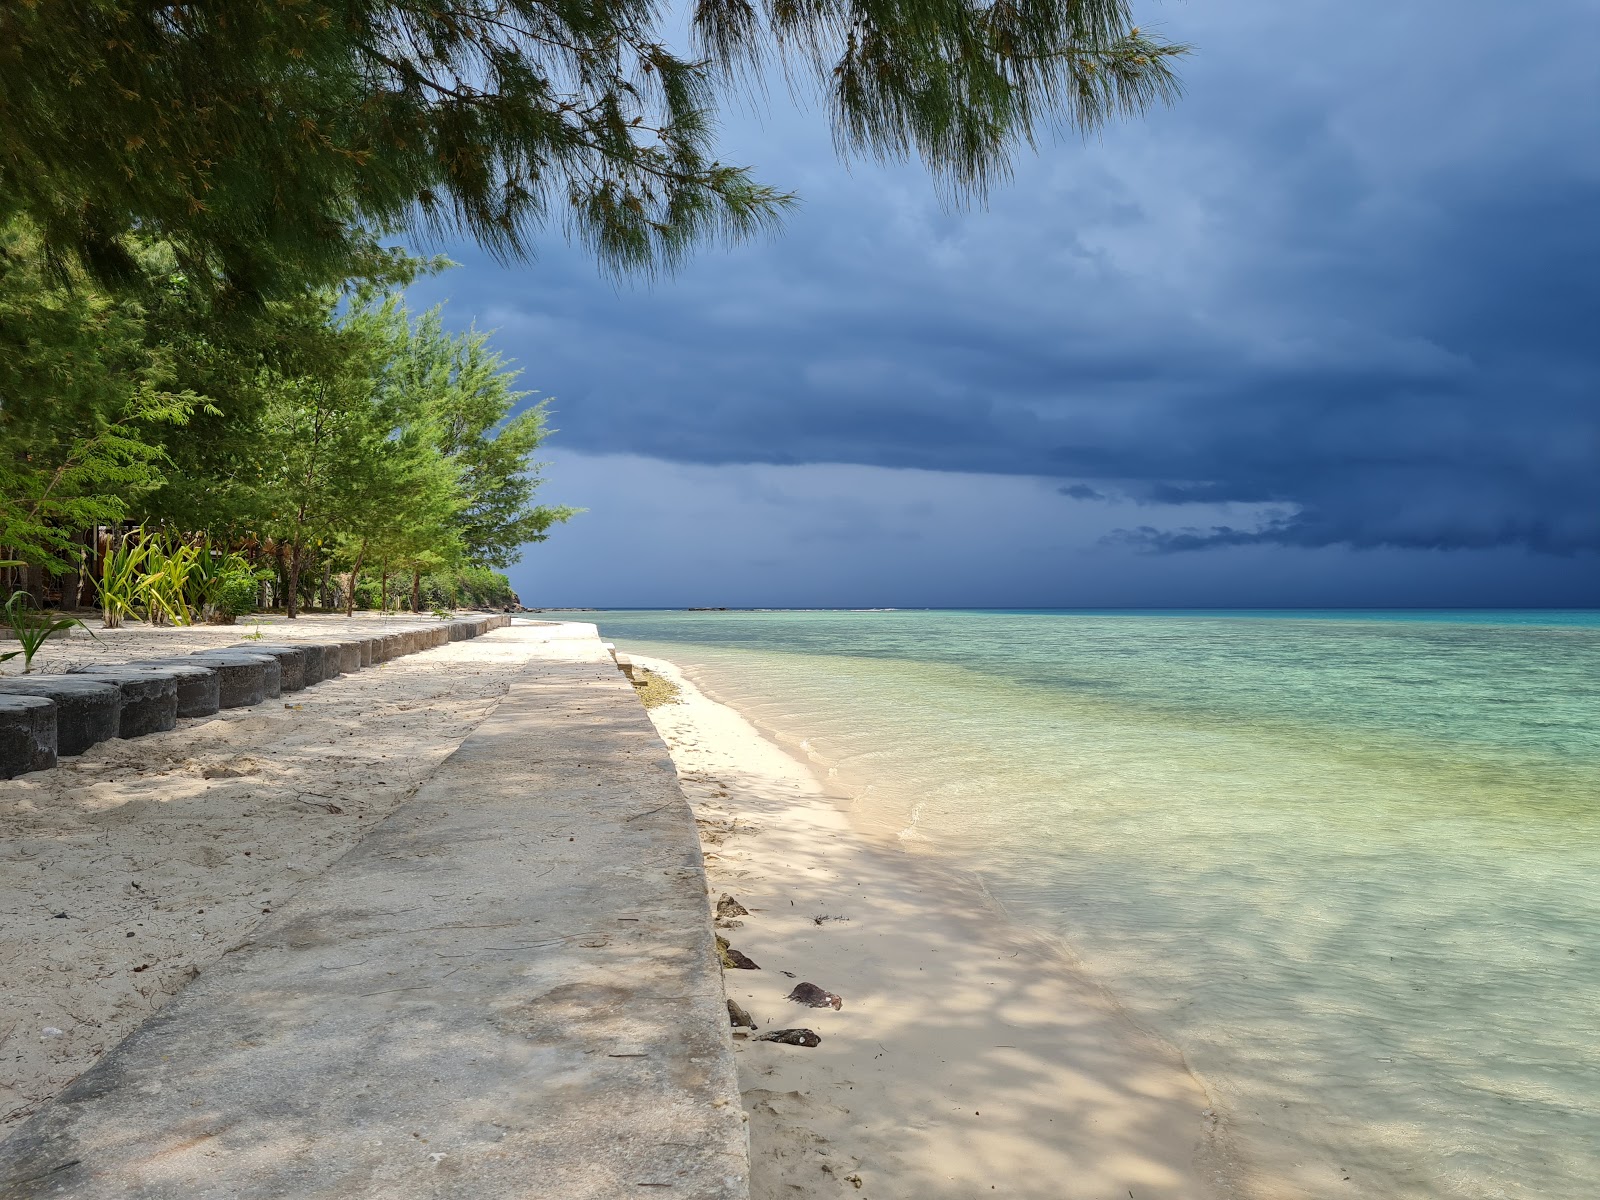 Fotografie cu Gili Sudak Beach - locul popular printre cunoscătorii de relaxare